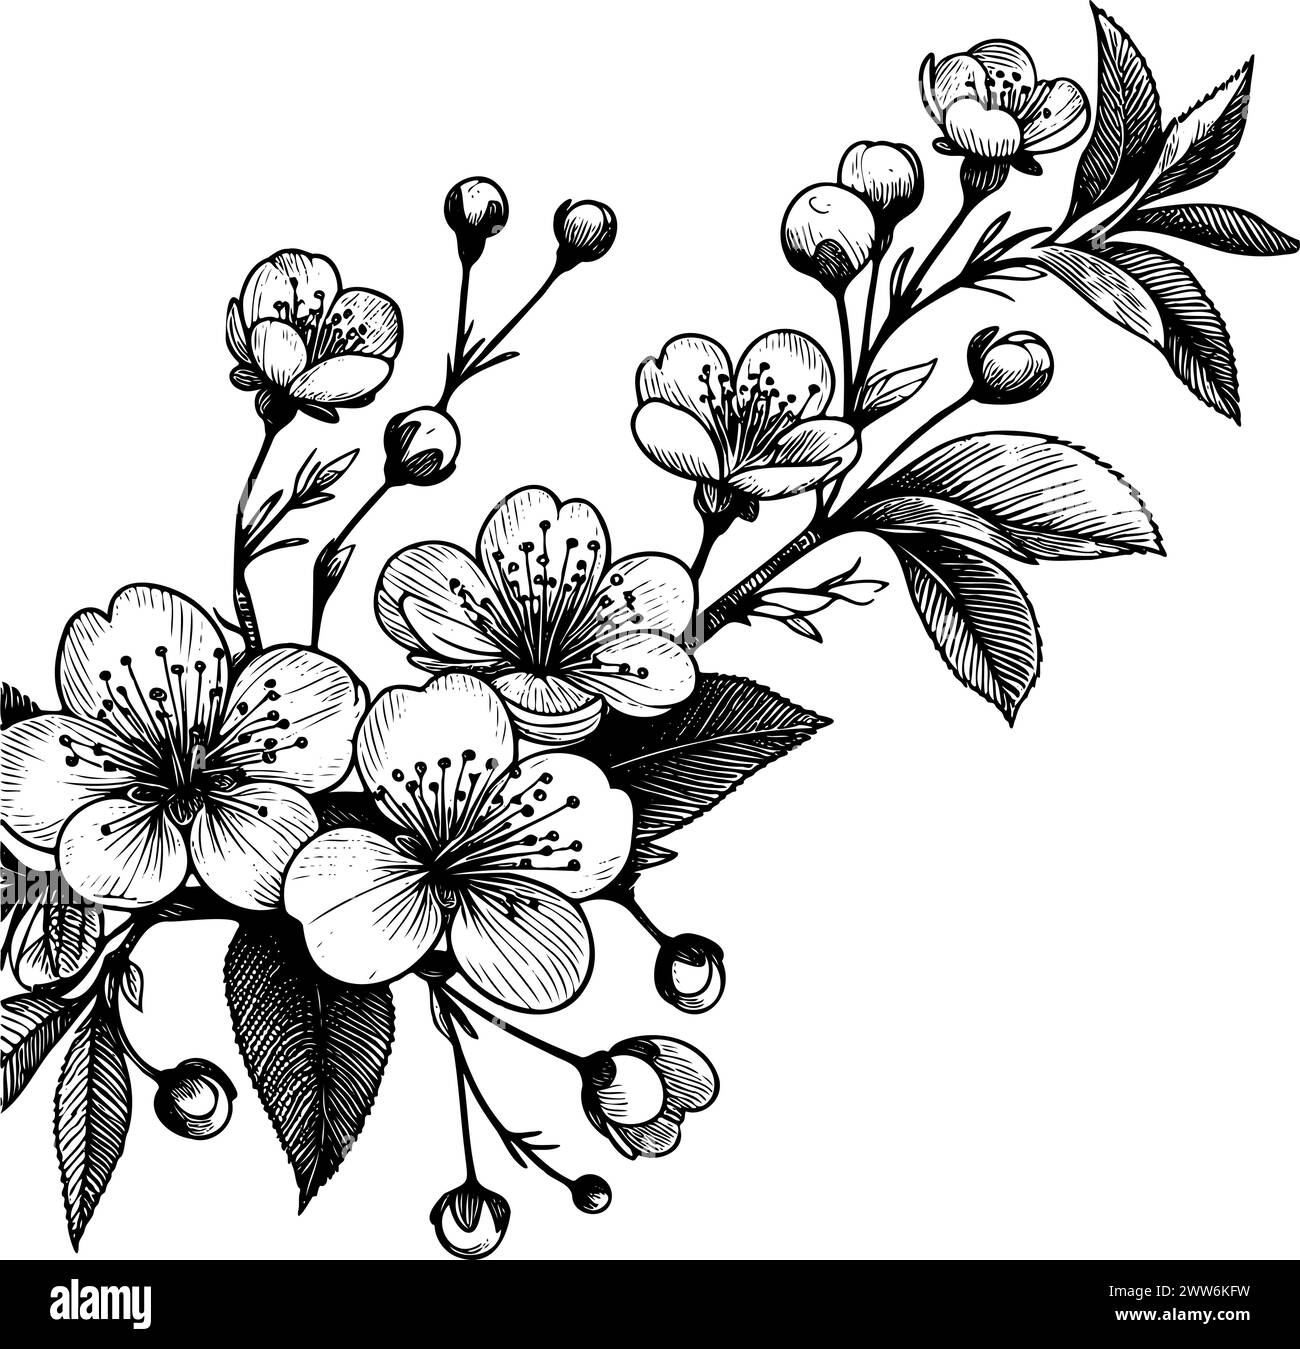 fleur de dessin noir et blanc avec tige feuillue. Fleur est dans l'image centrale et a peu d'autres fleurs l'entourant, il est dessiné à la main, pas ai Illustration de Vecteur